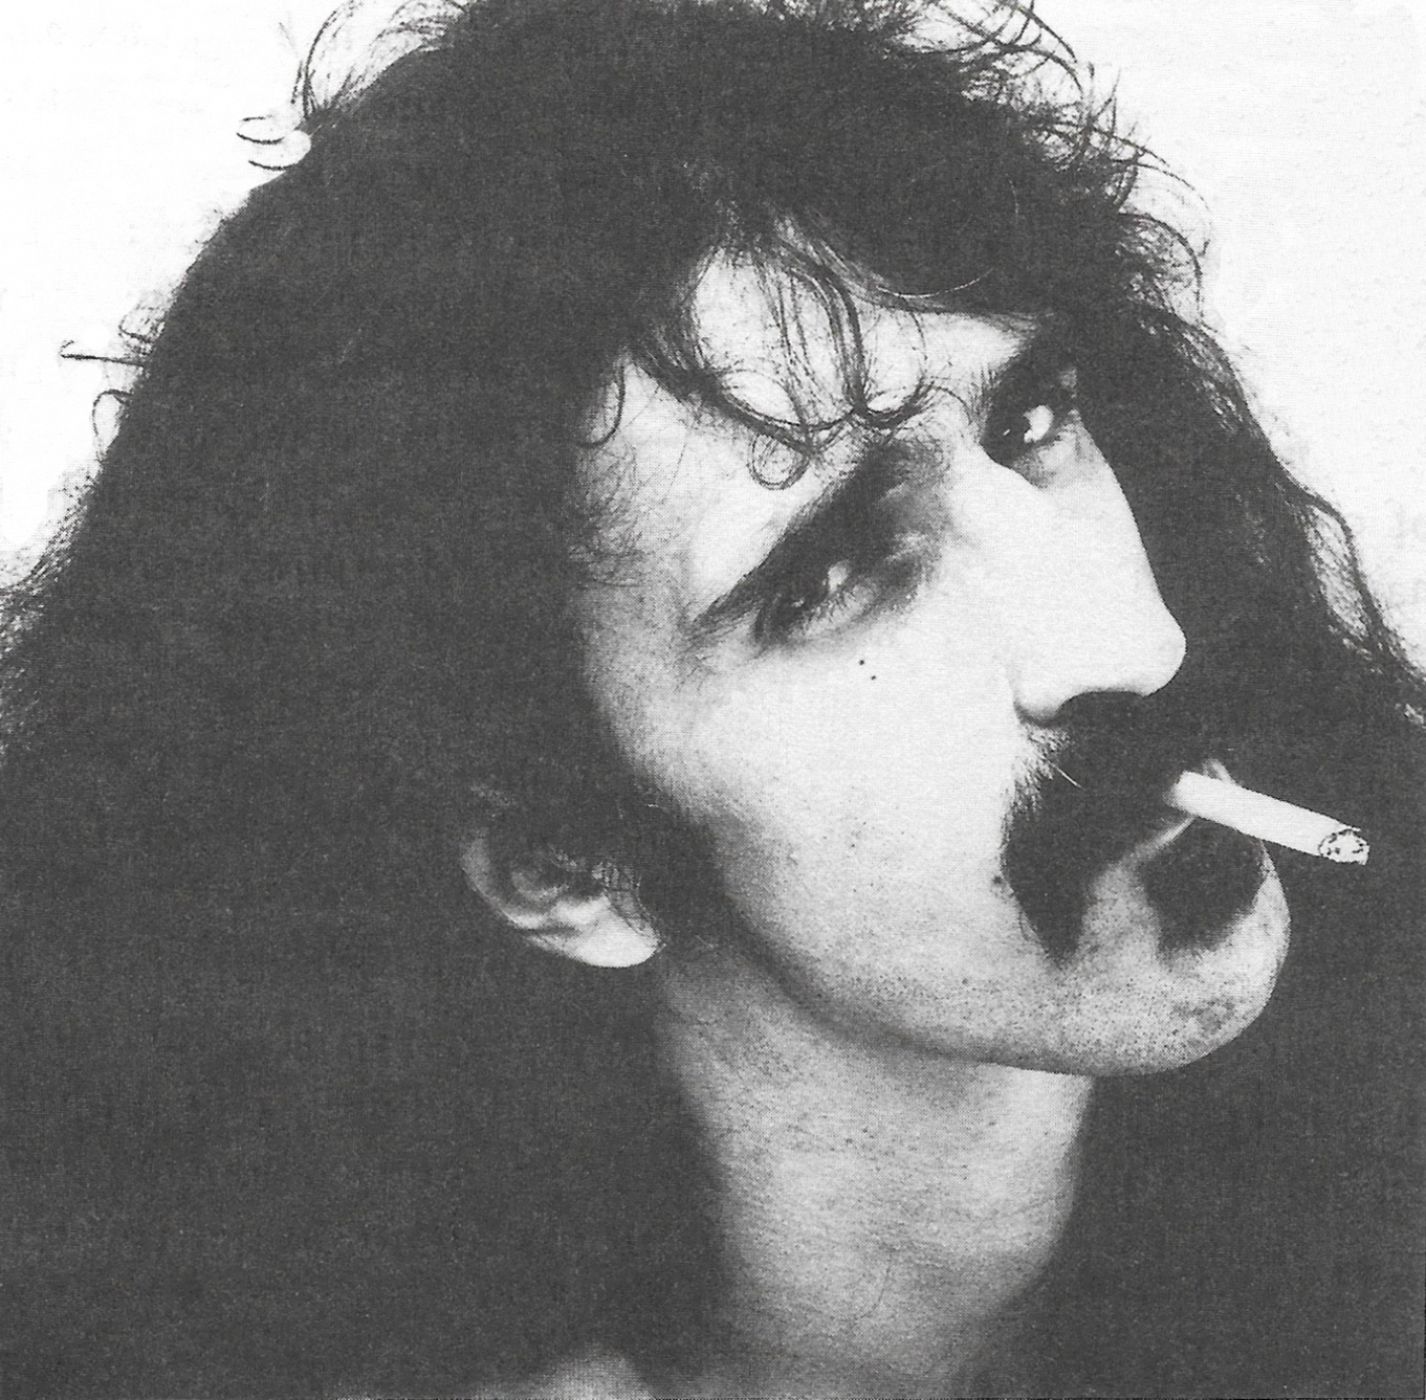 Imagen de Frank Zappa incluida en sus "Memorias"